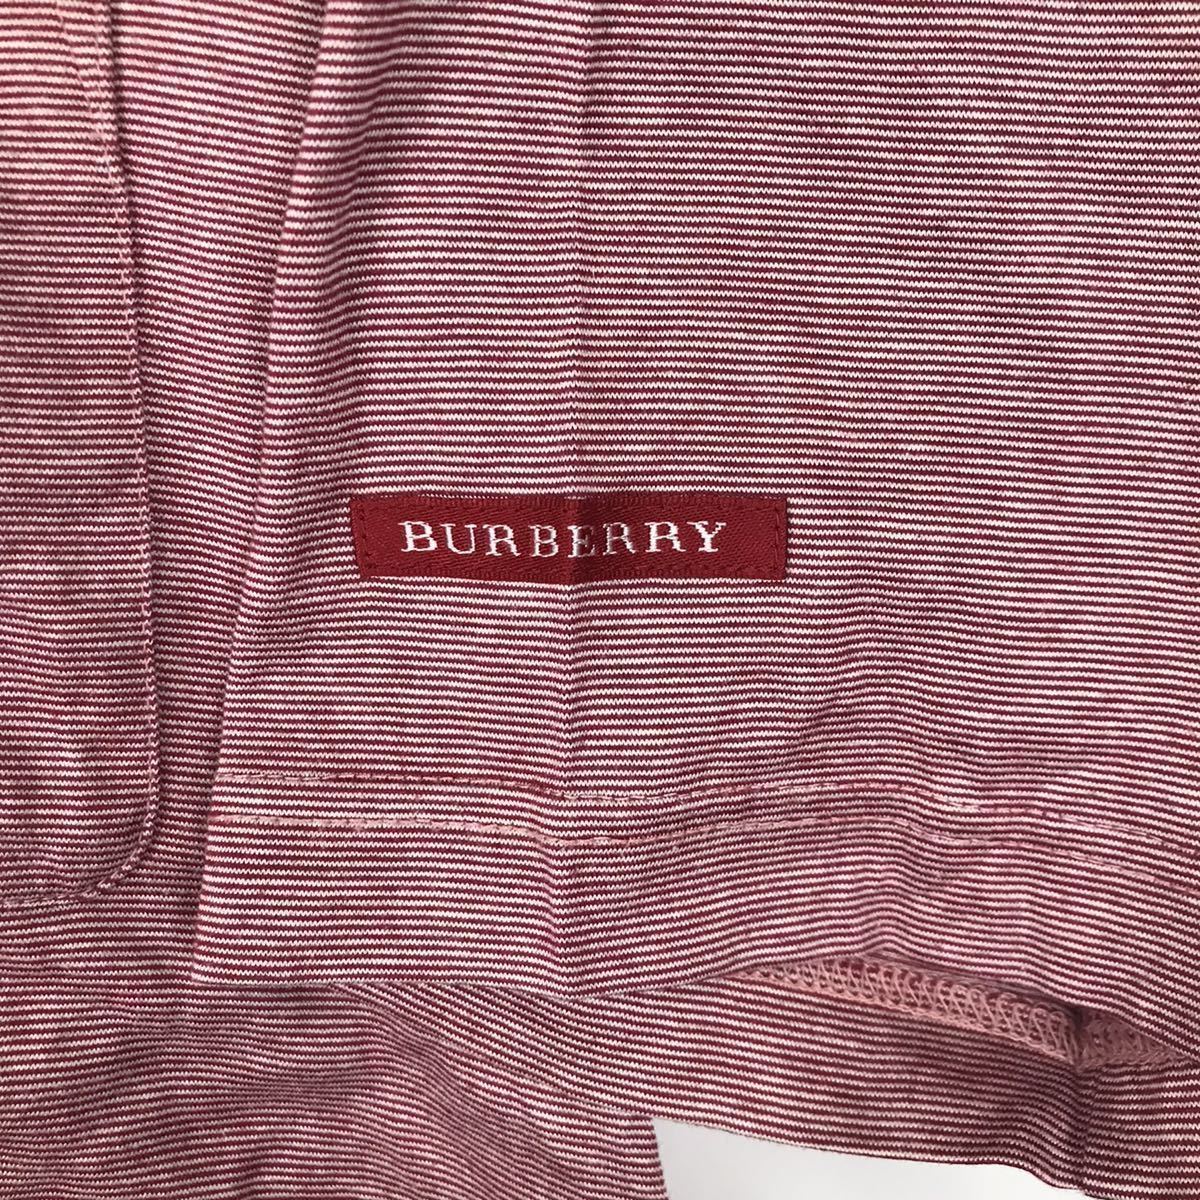 BURBERRY GOLF バーバリー ゴルフ 半袖 ポロシャツ レッド 赤 メンズ Mサイズ ストライプ ボーダー スポーツ トレーニング ウェア コットン